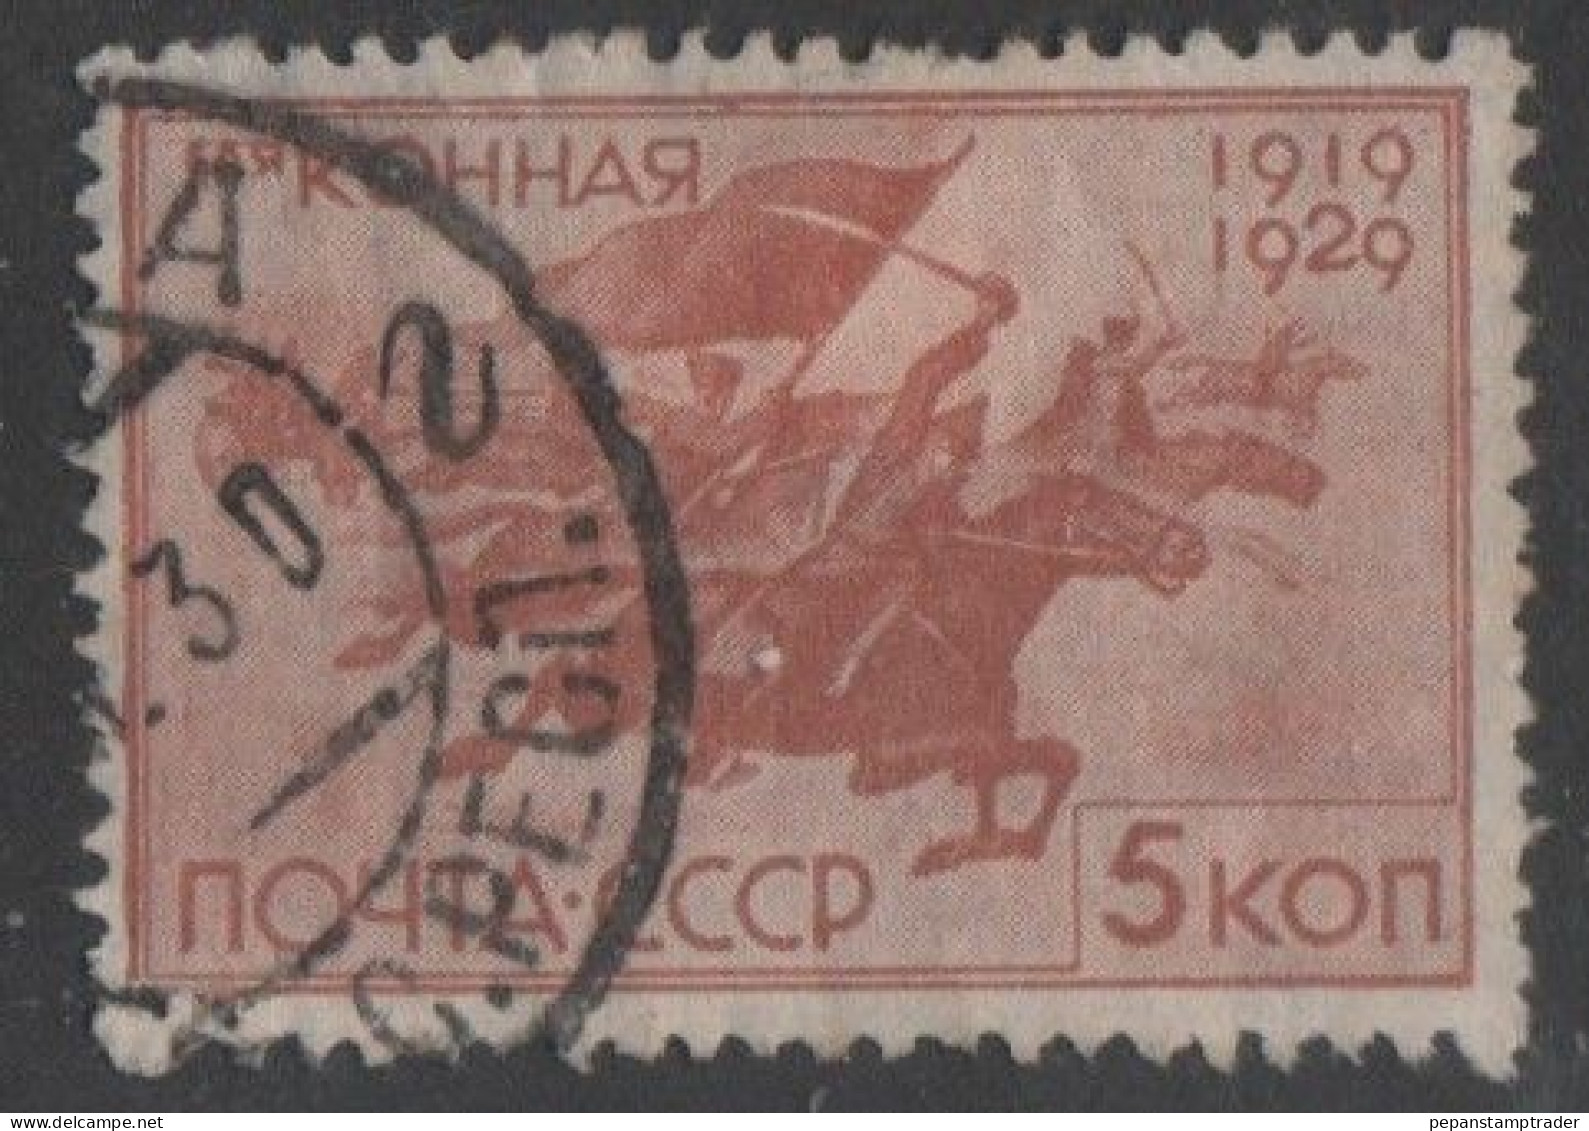 USSR - #432 -used - Usati